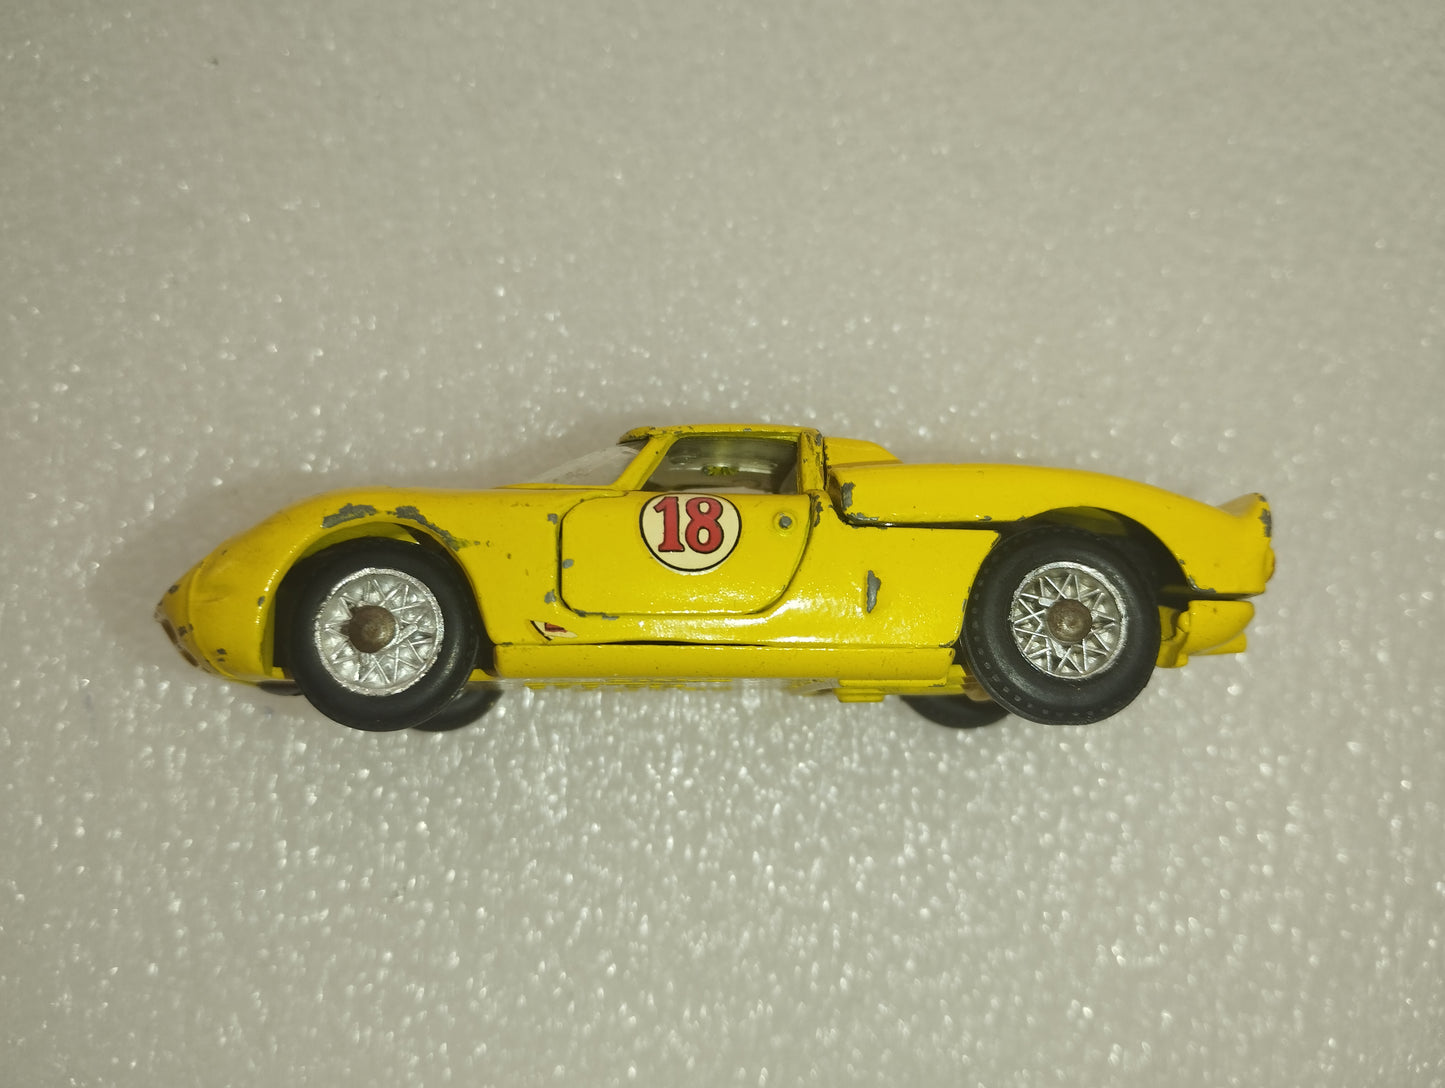 Ferrari 330 P2 Mercury
Scala 1:43